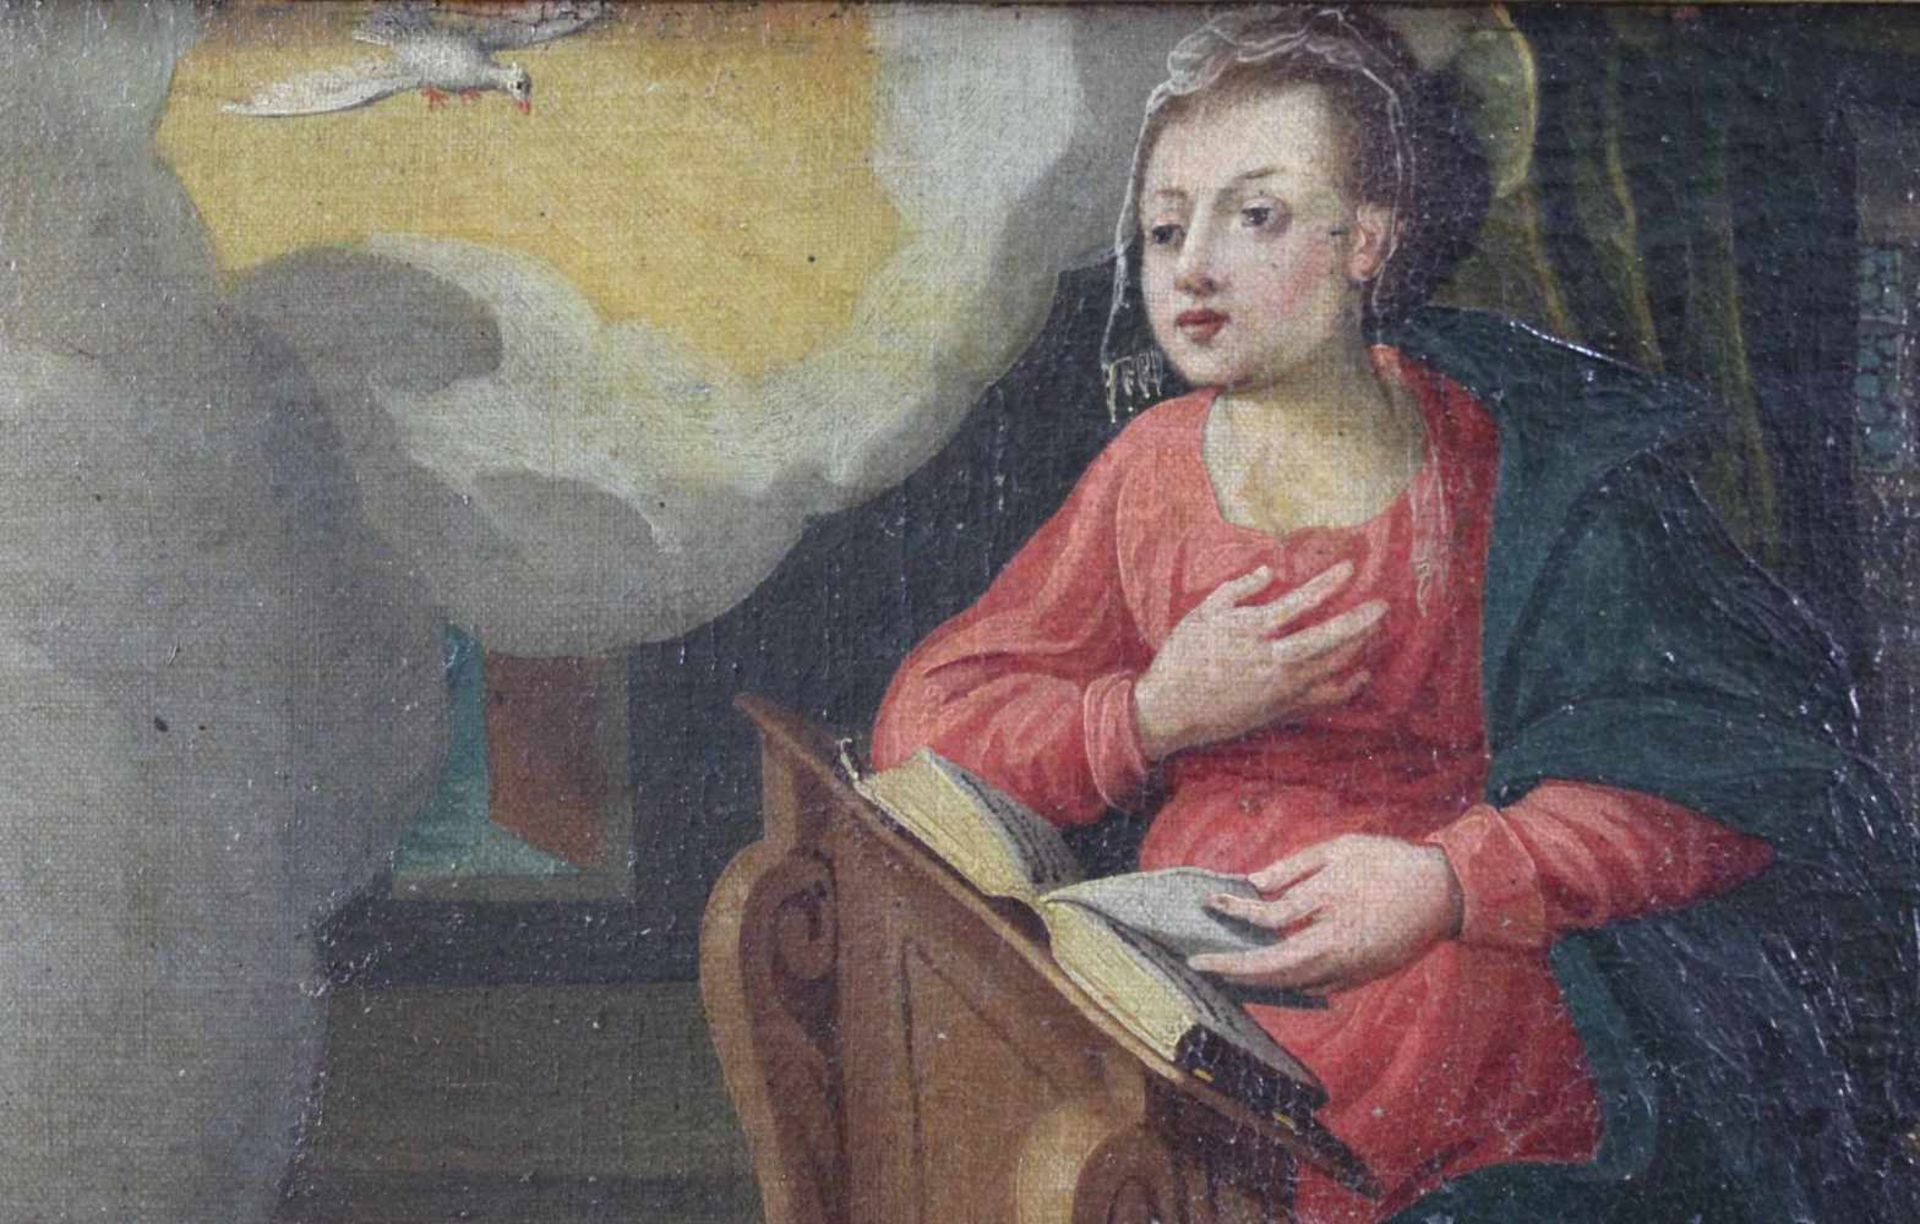 UNSIGNIERT (XVI - XVII). Die jungfräuliche Verkündigung. 32 cm x 80 cm. Gemälde. Öl auf Leinwand. - Bild 4 aus 6